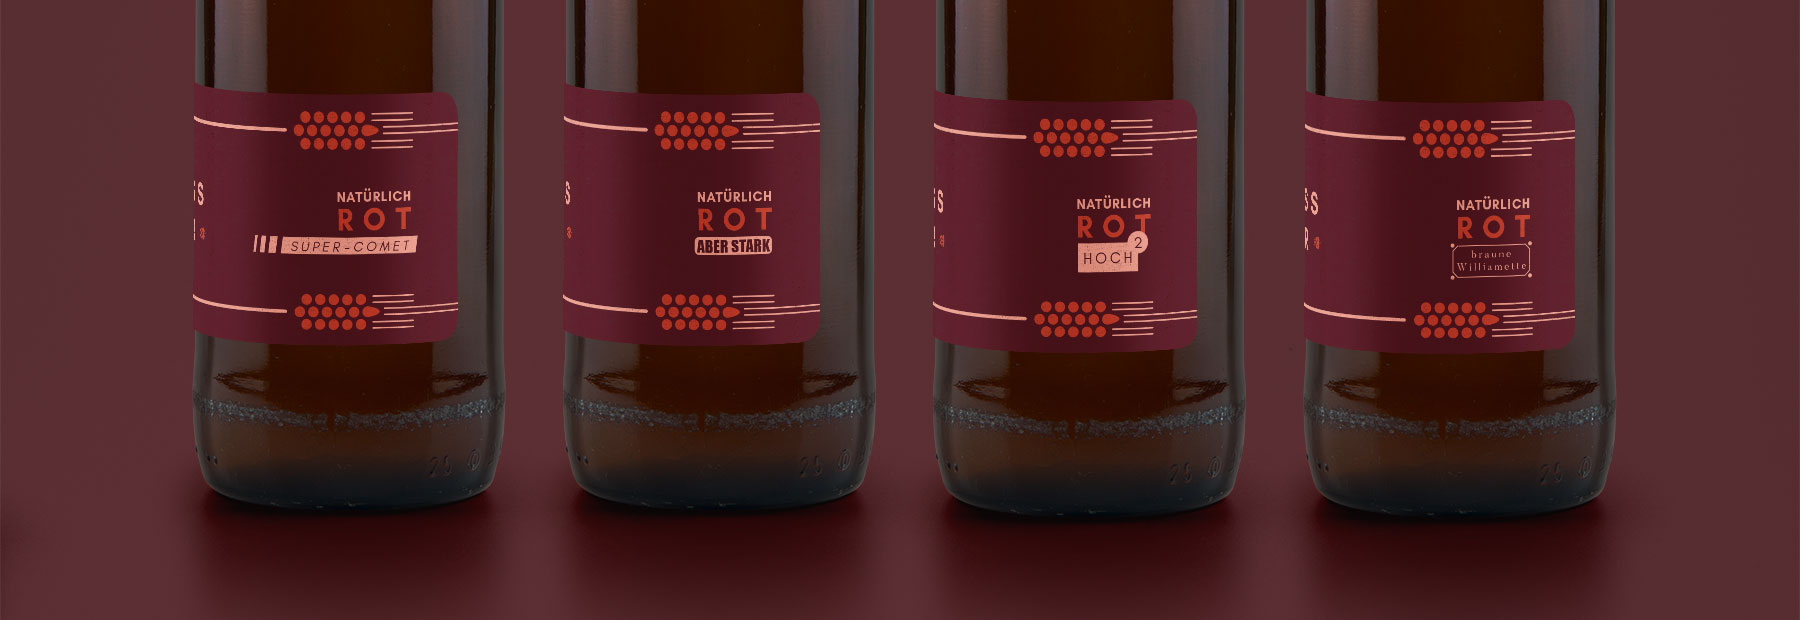 beer-packaging-design-wedding-bier-by-max-duchardt-maax-sorten